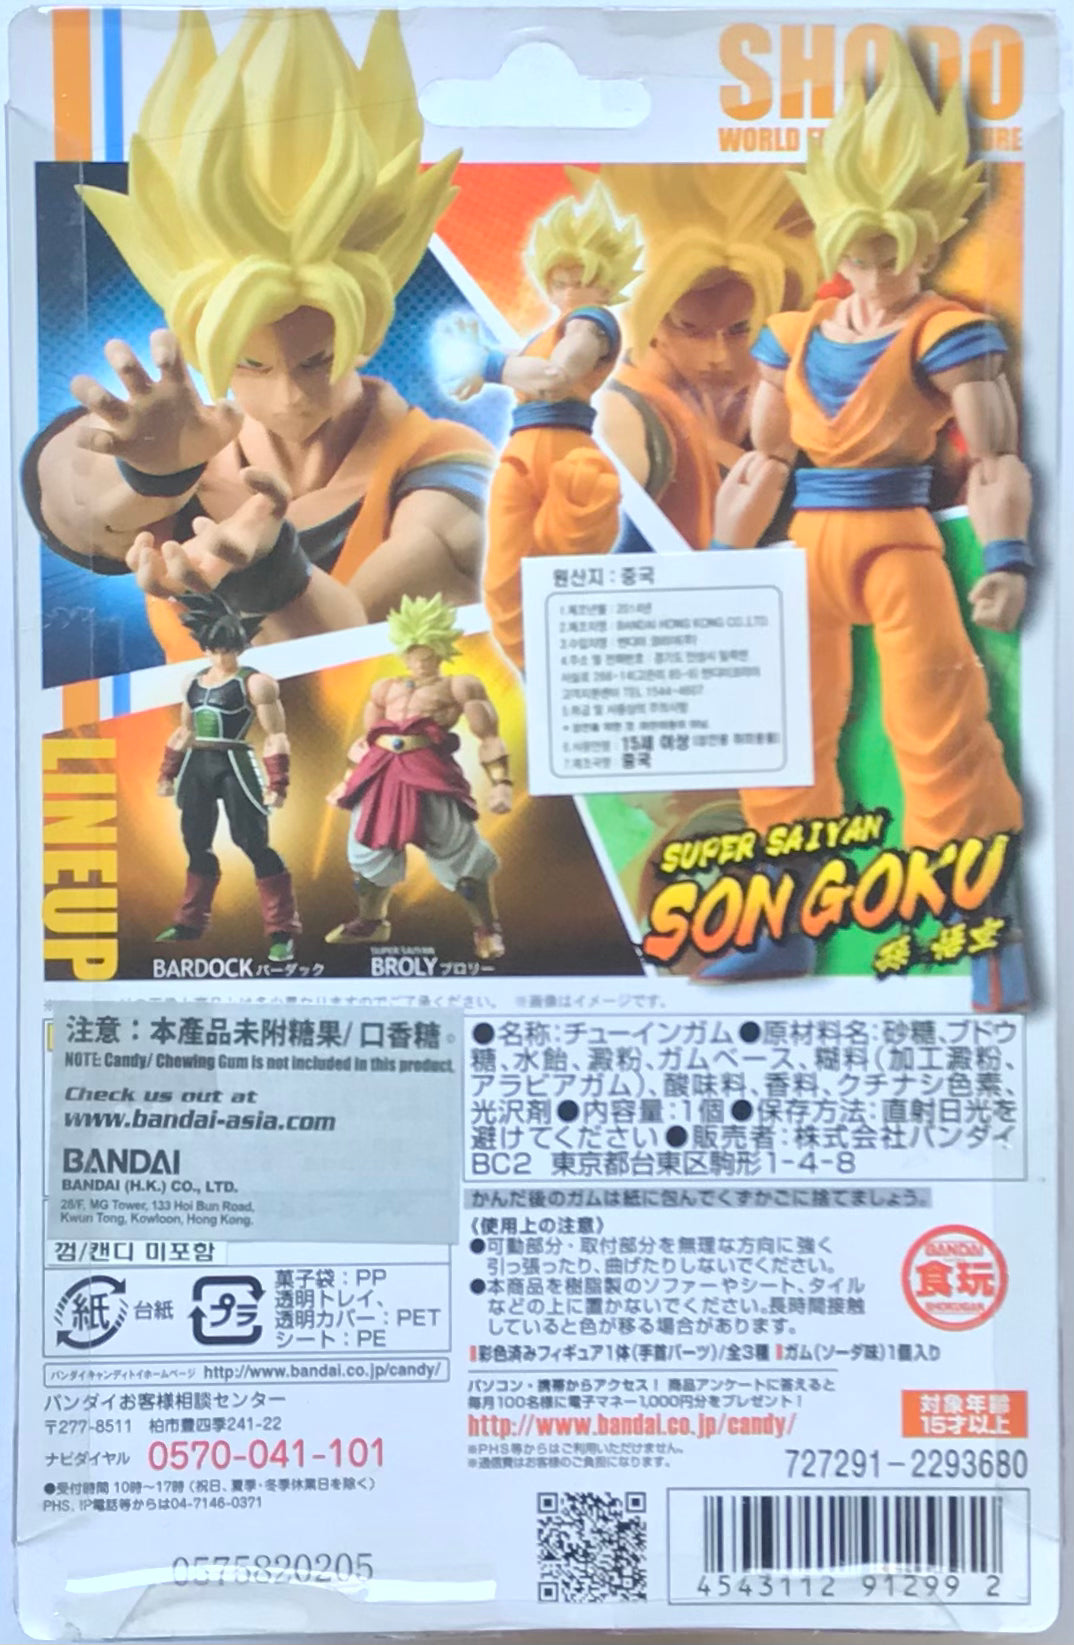 Action Figure Son Goku Super Sayajin Dragon Ball Z Bandai